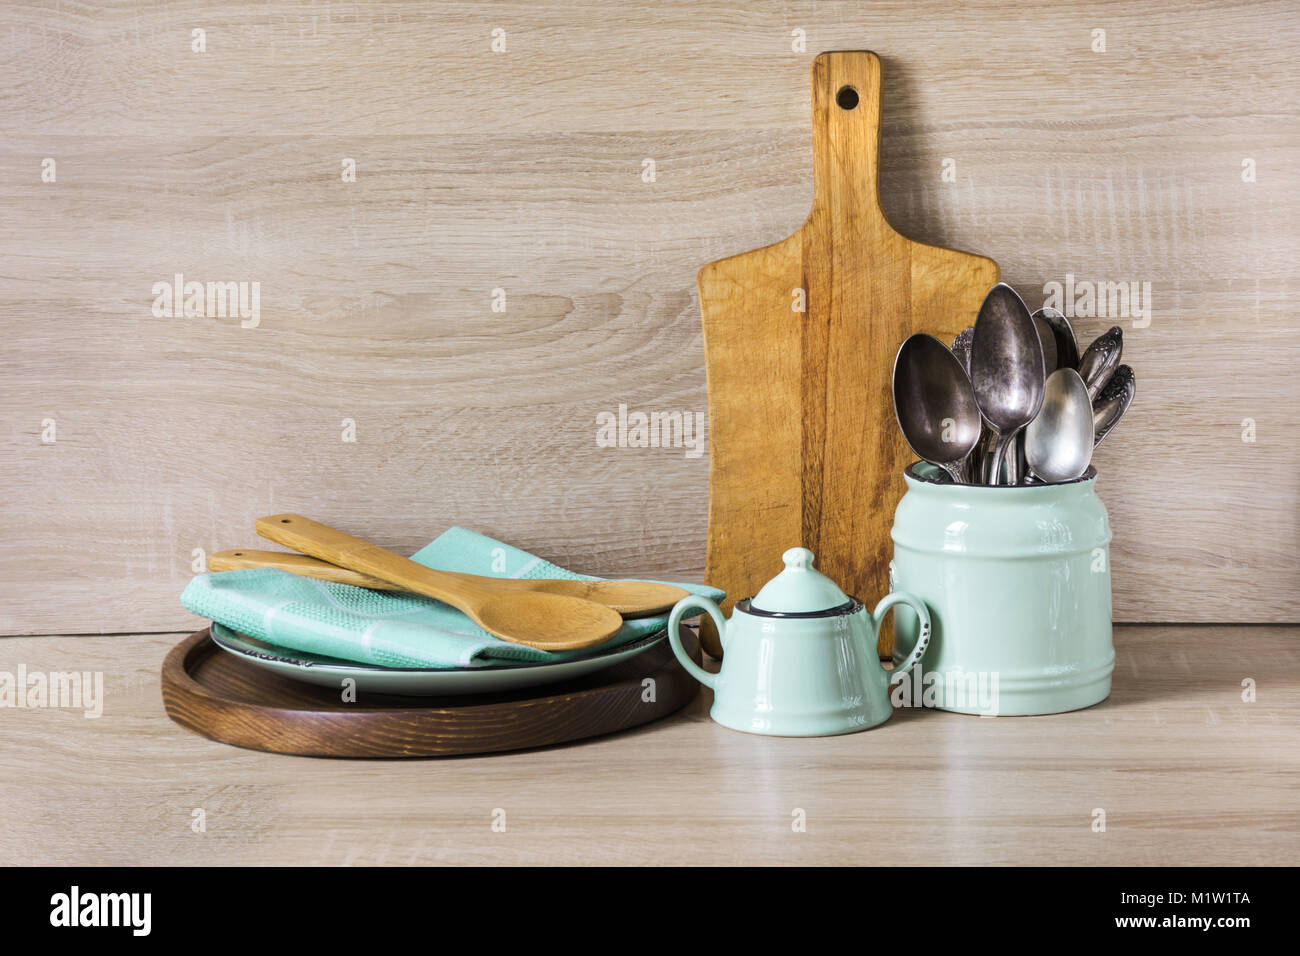 En bois et turquoise vintage vaisselle, vaisselle, ustensiles et vaisselle trucs sur table en bois-haut. La vie encore cuisine comme arrière-plan pour la conception. Droit Banque D'Images